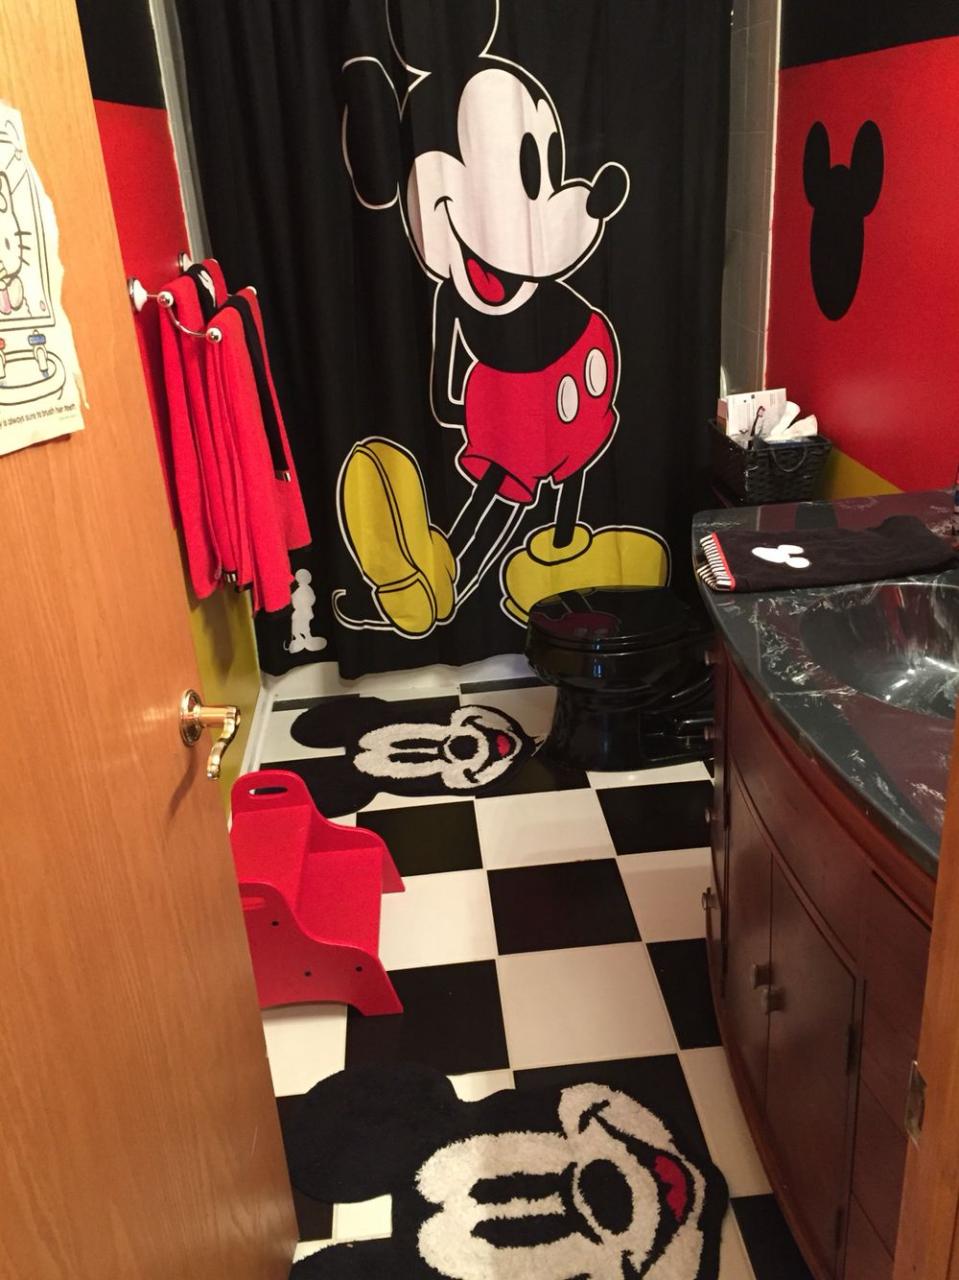 Mickey Mouse bathroom Mickey mouse bathroom, Disney home decor